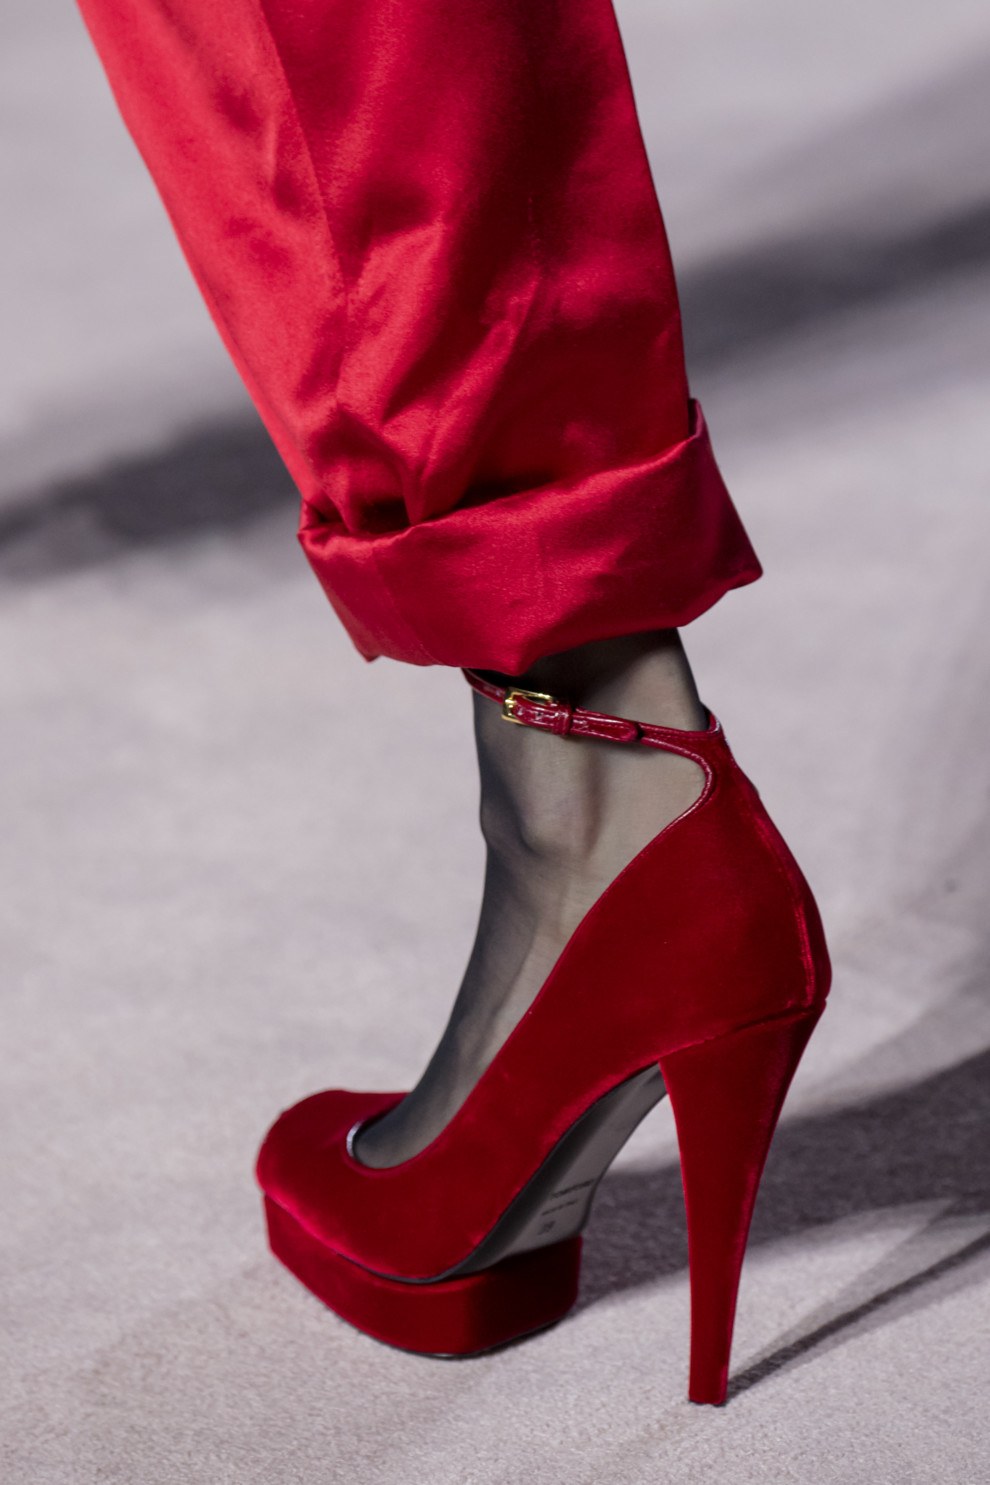 Современная женская обувь из коллекций весна-лето 2020: самые модные новинки